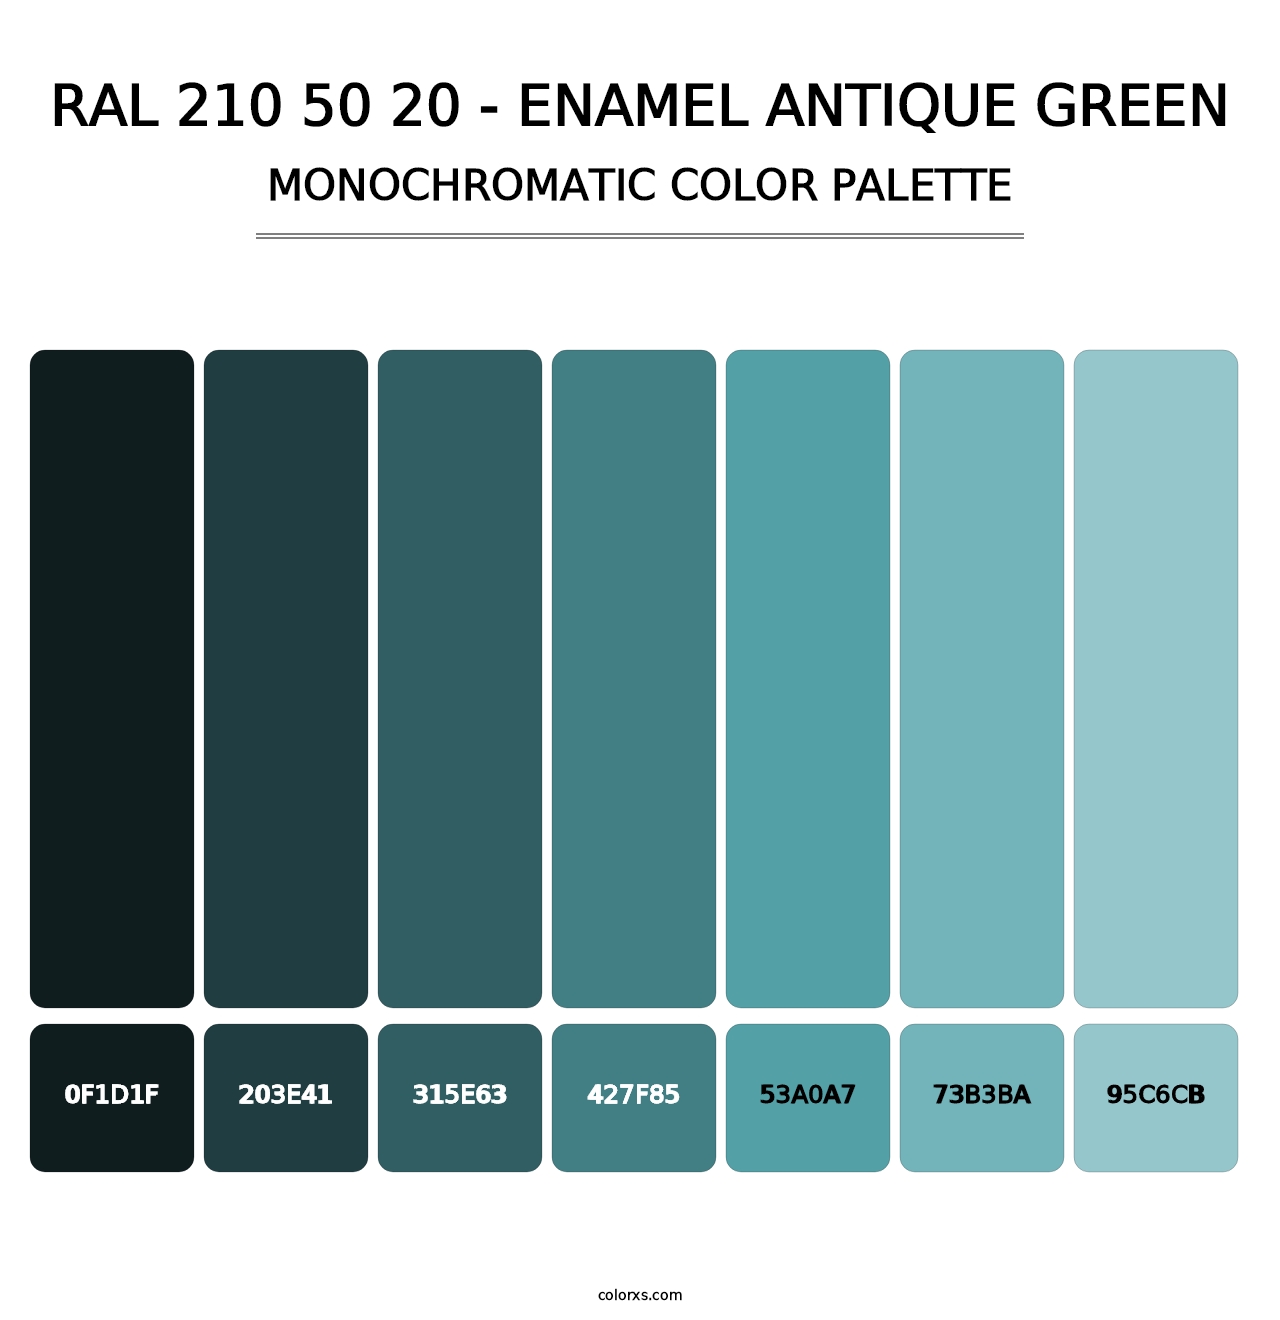 RAL 210 50 20 - Enamel Antique Green - Monochromatic Color Palette